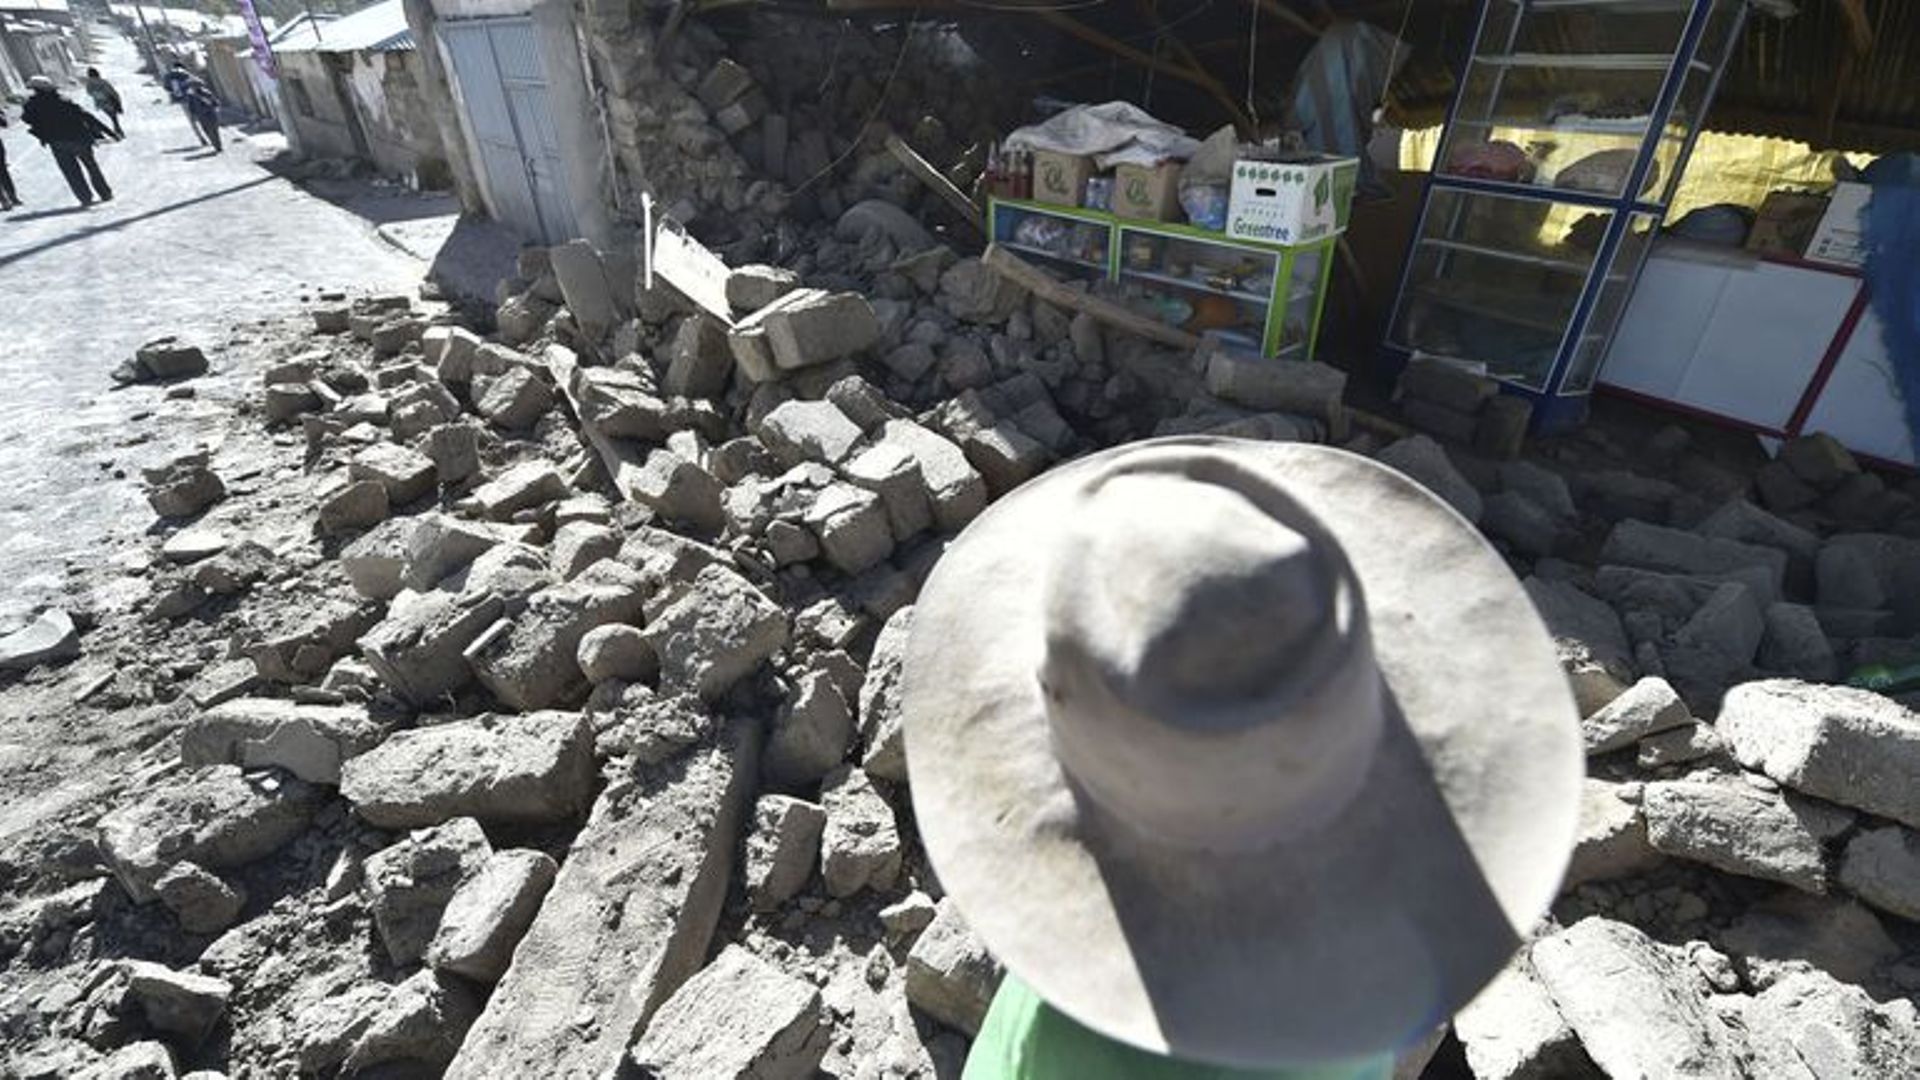 Dégâts lors d'un tremblement de terre d'une magnitude de 5,3 sur l'échelle de Richter le 15 août 2016 dans la ville des Andes de Yanque.